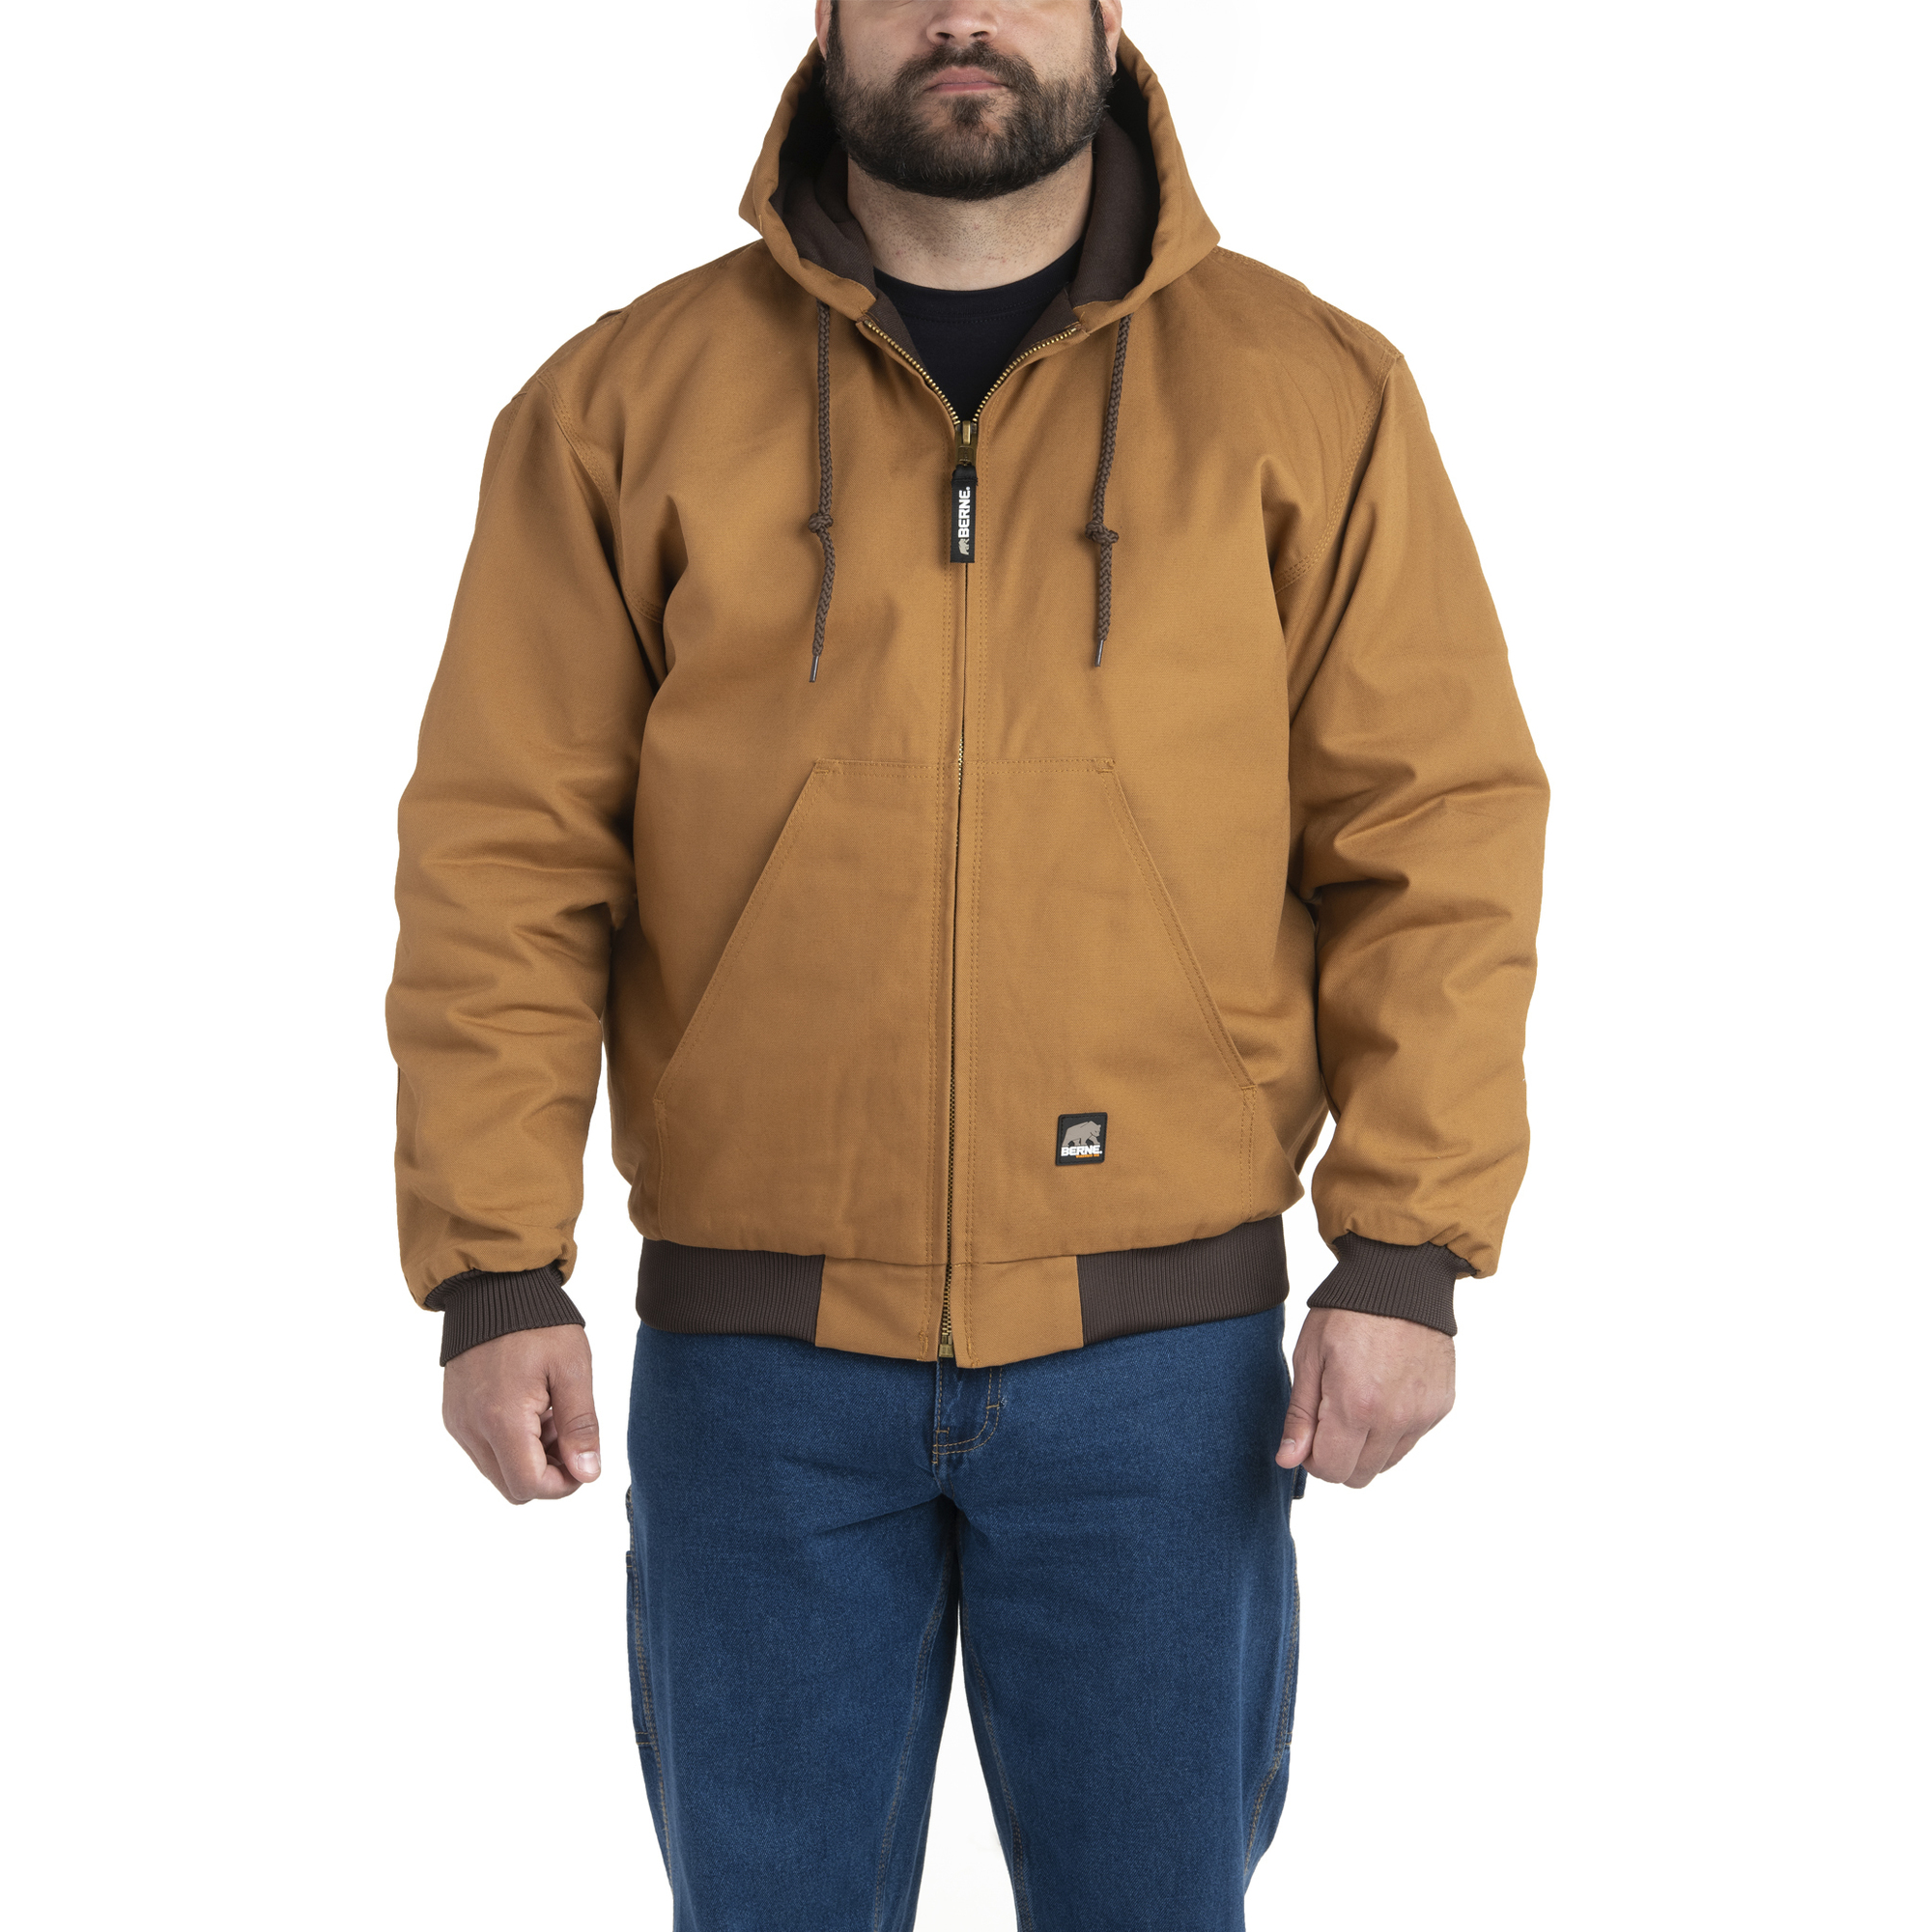 Berne Apparel, Heritage Hooded Jacket, Size M, Color Brown Duck, Model HJ51